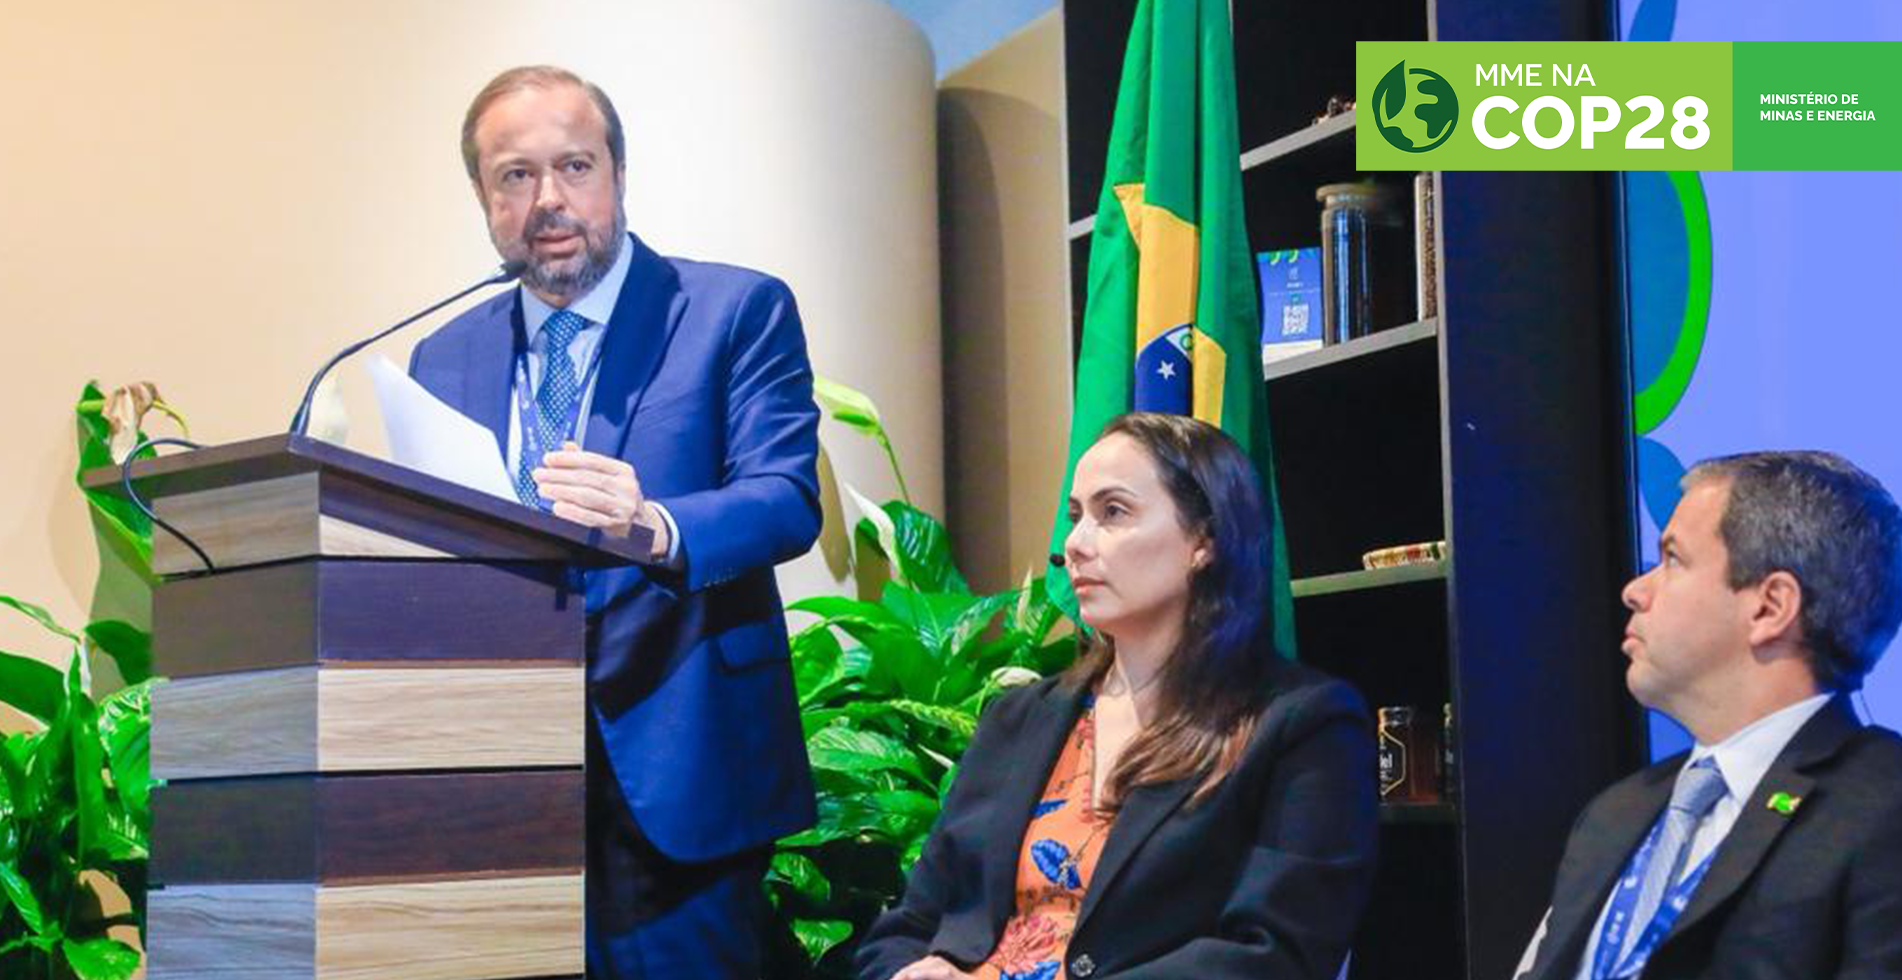 Próxima geração de combustíveis renováveis vão reforçar liderança brasileira e colocar o Brasil como grande fornecedor global